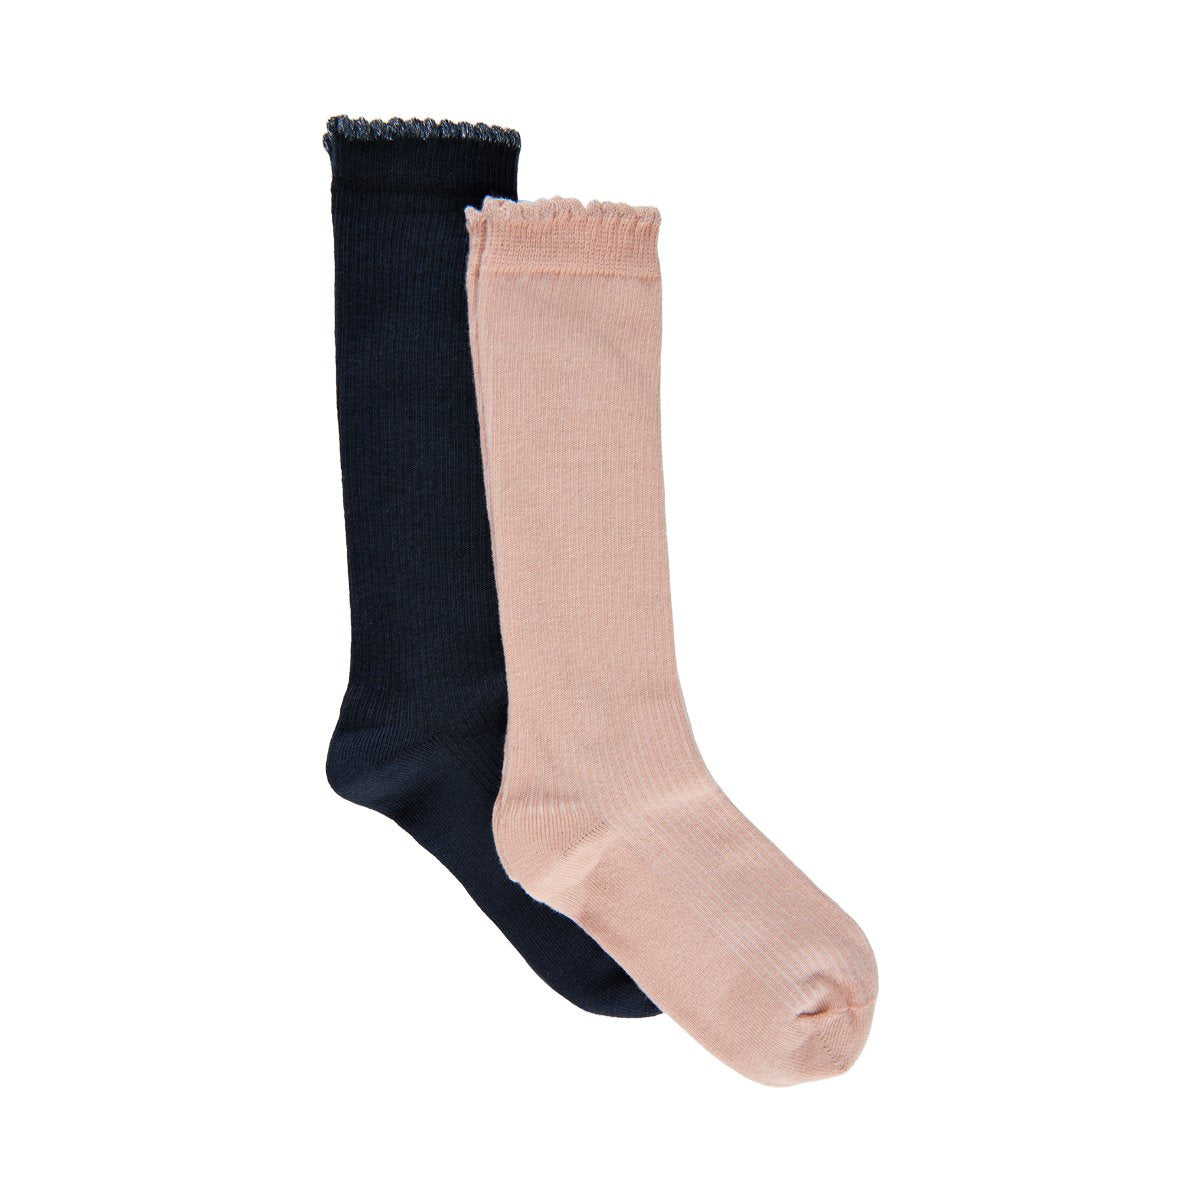 Meisjes Knee Socks van Creamie in de kleur Rose Smoke in maat 35-38.